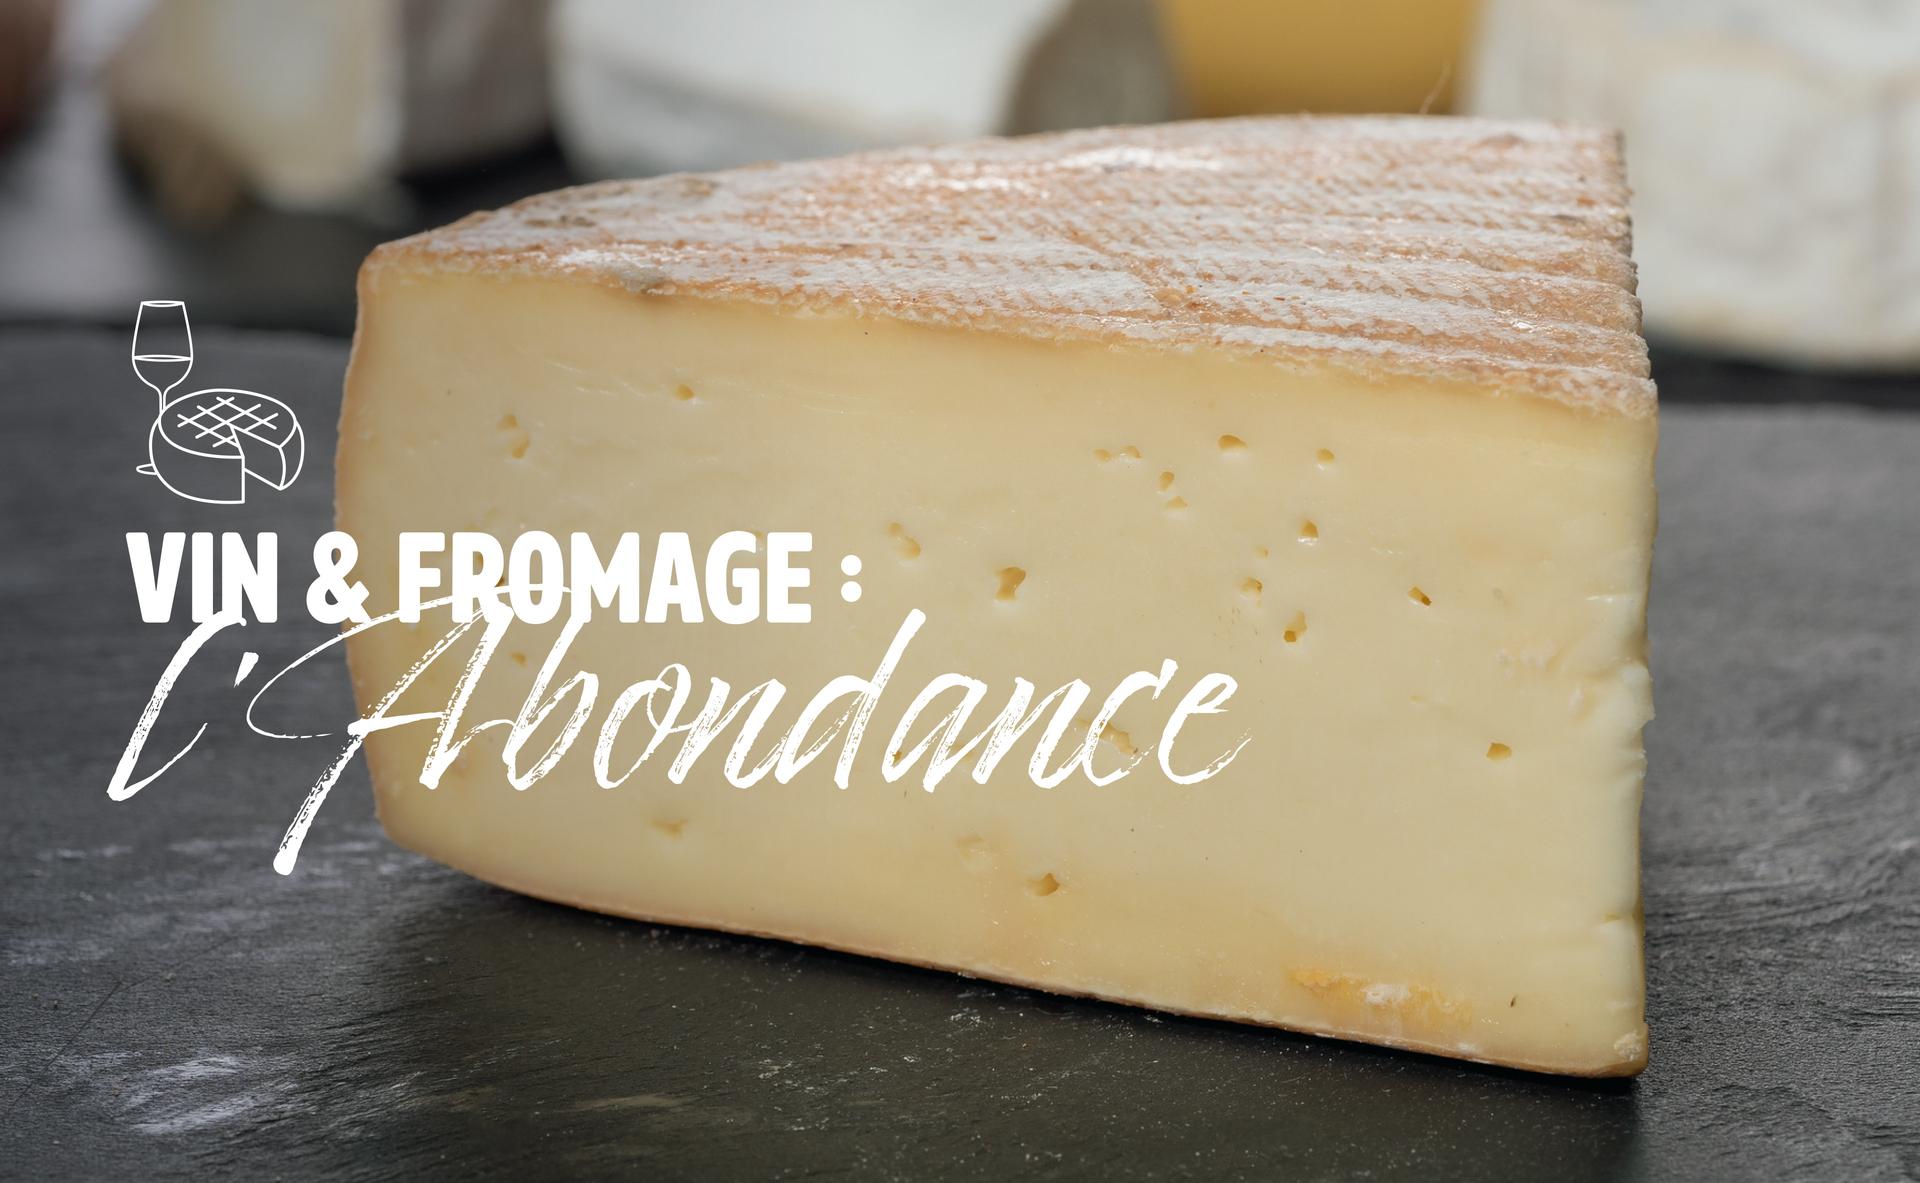 Vin & fromage : l’Abondance